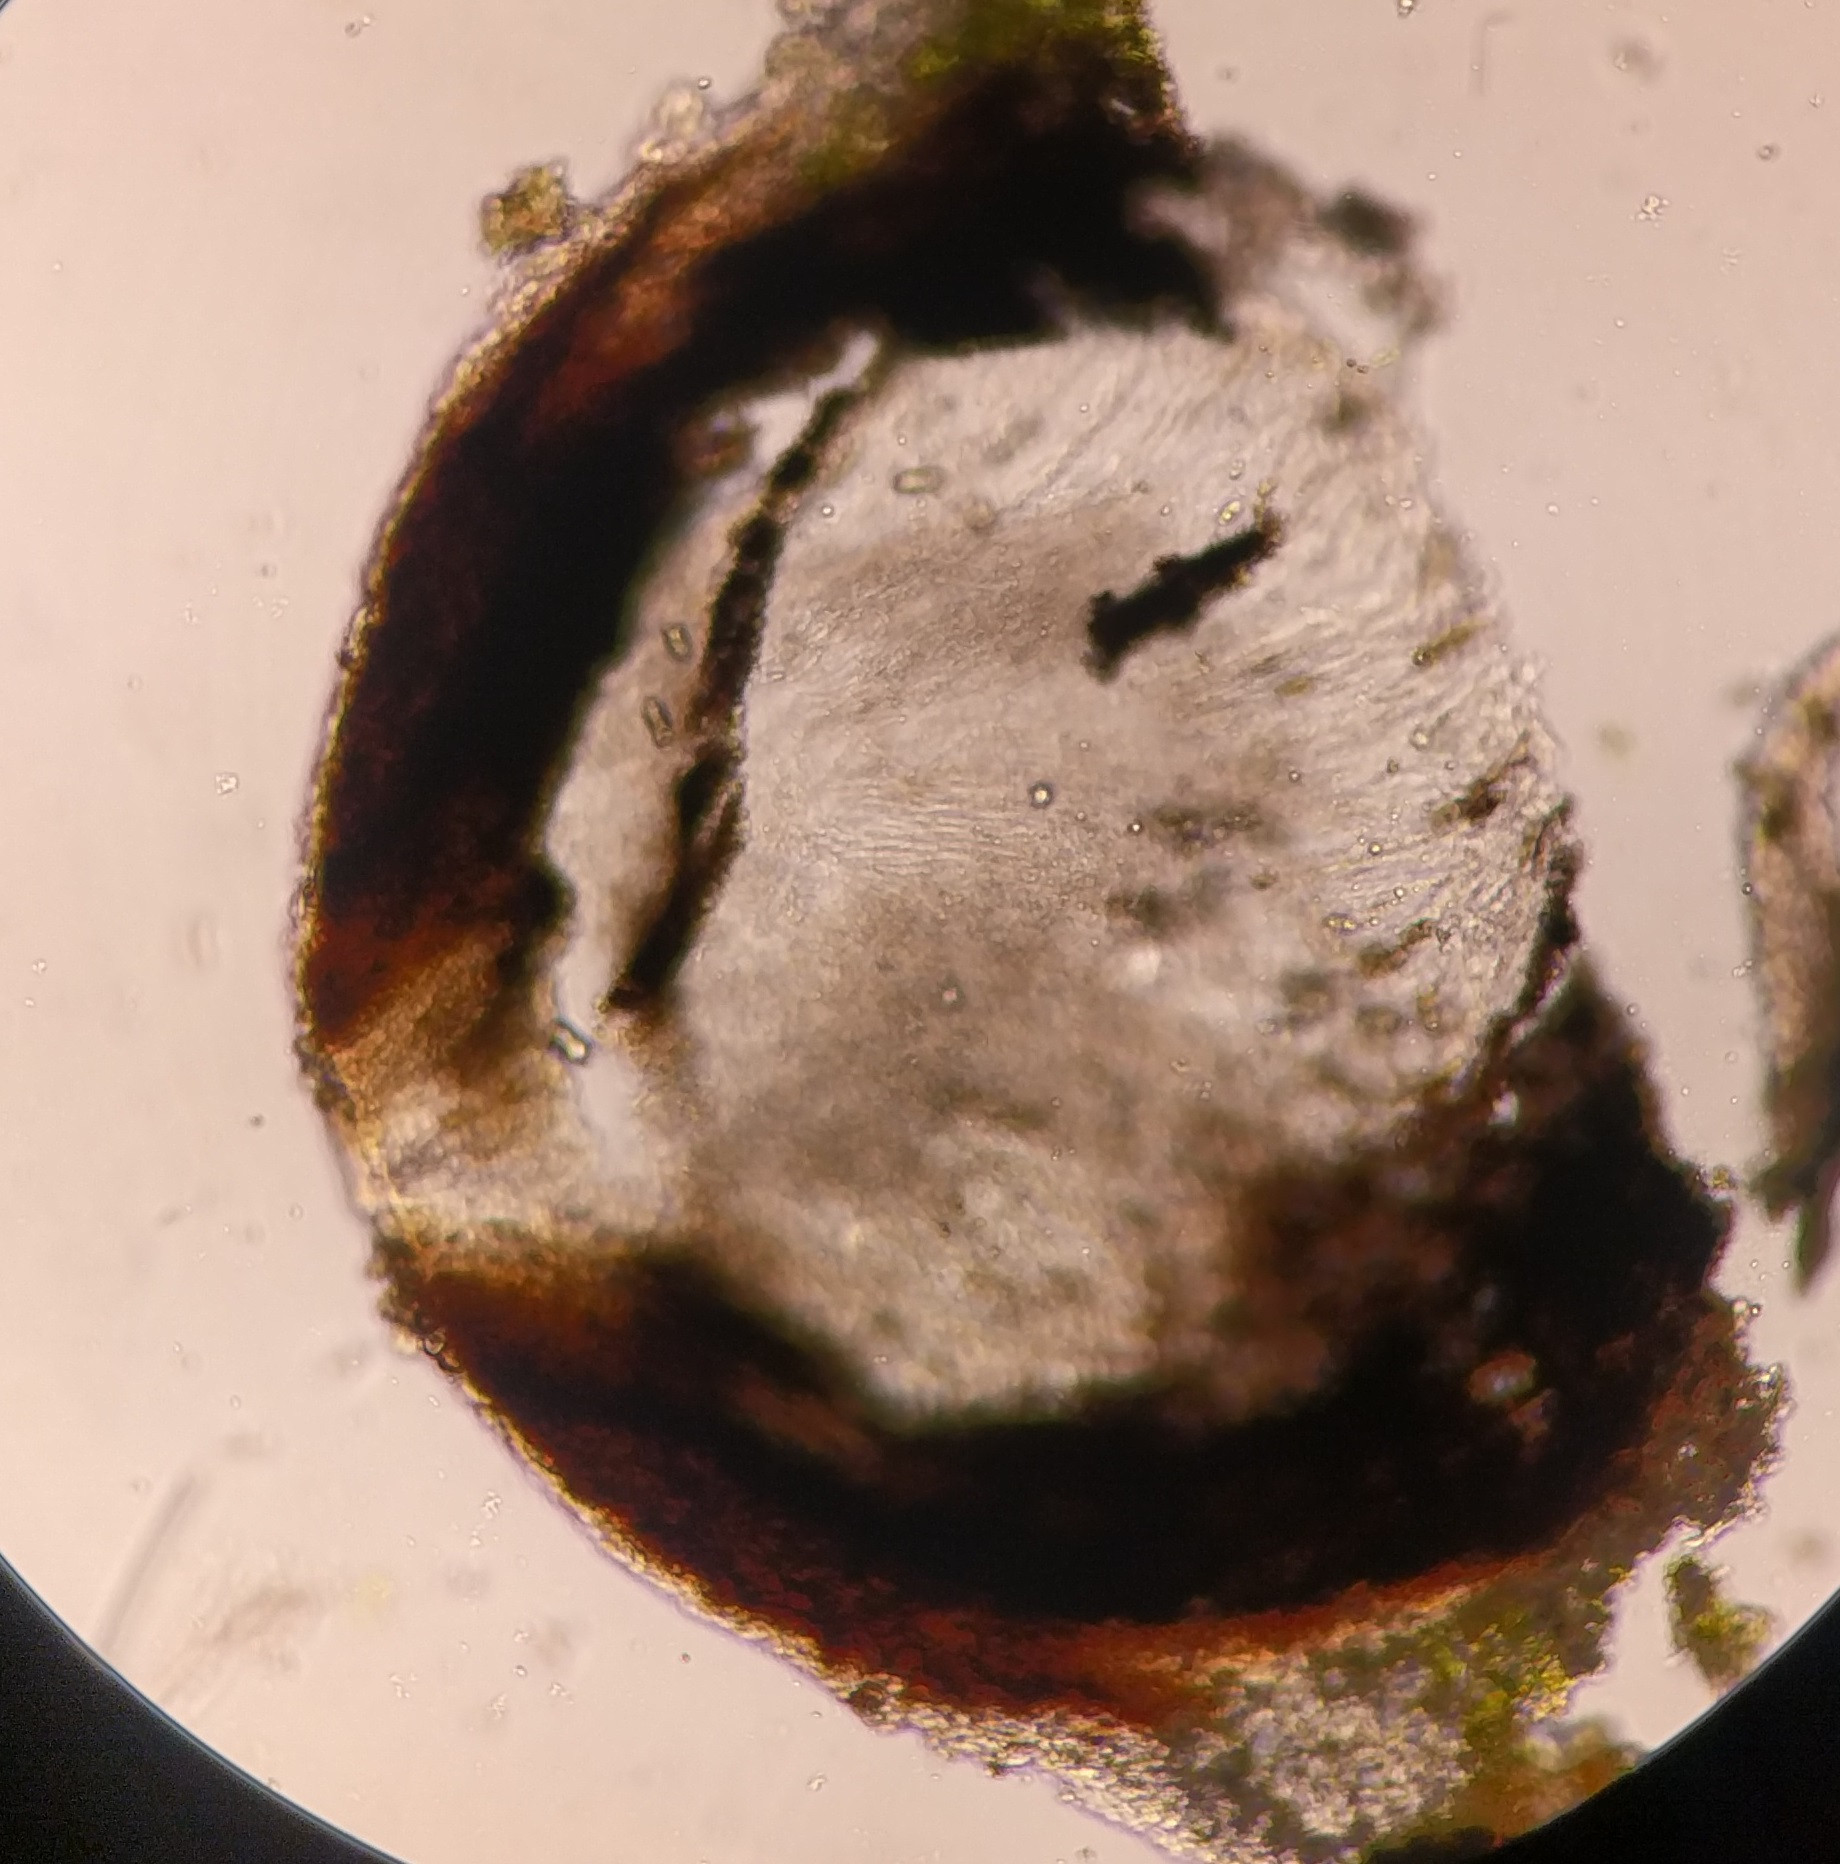 Acrocordia gemmata perithecium